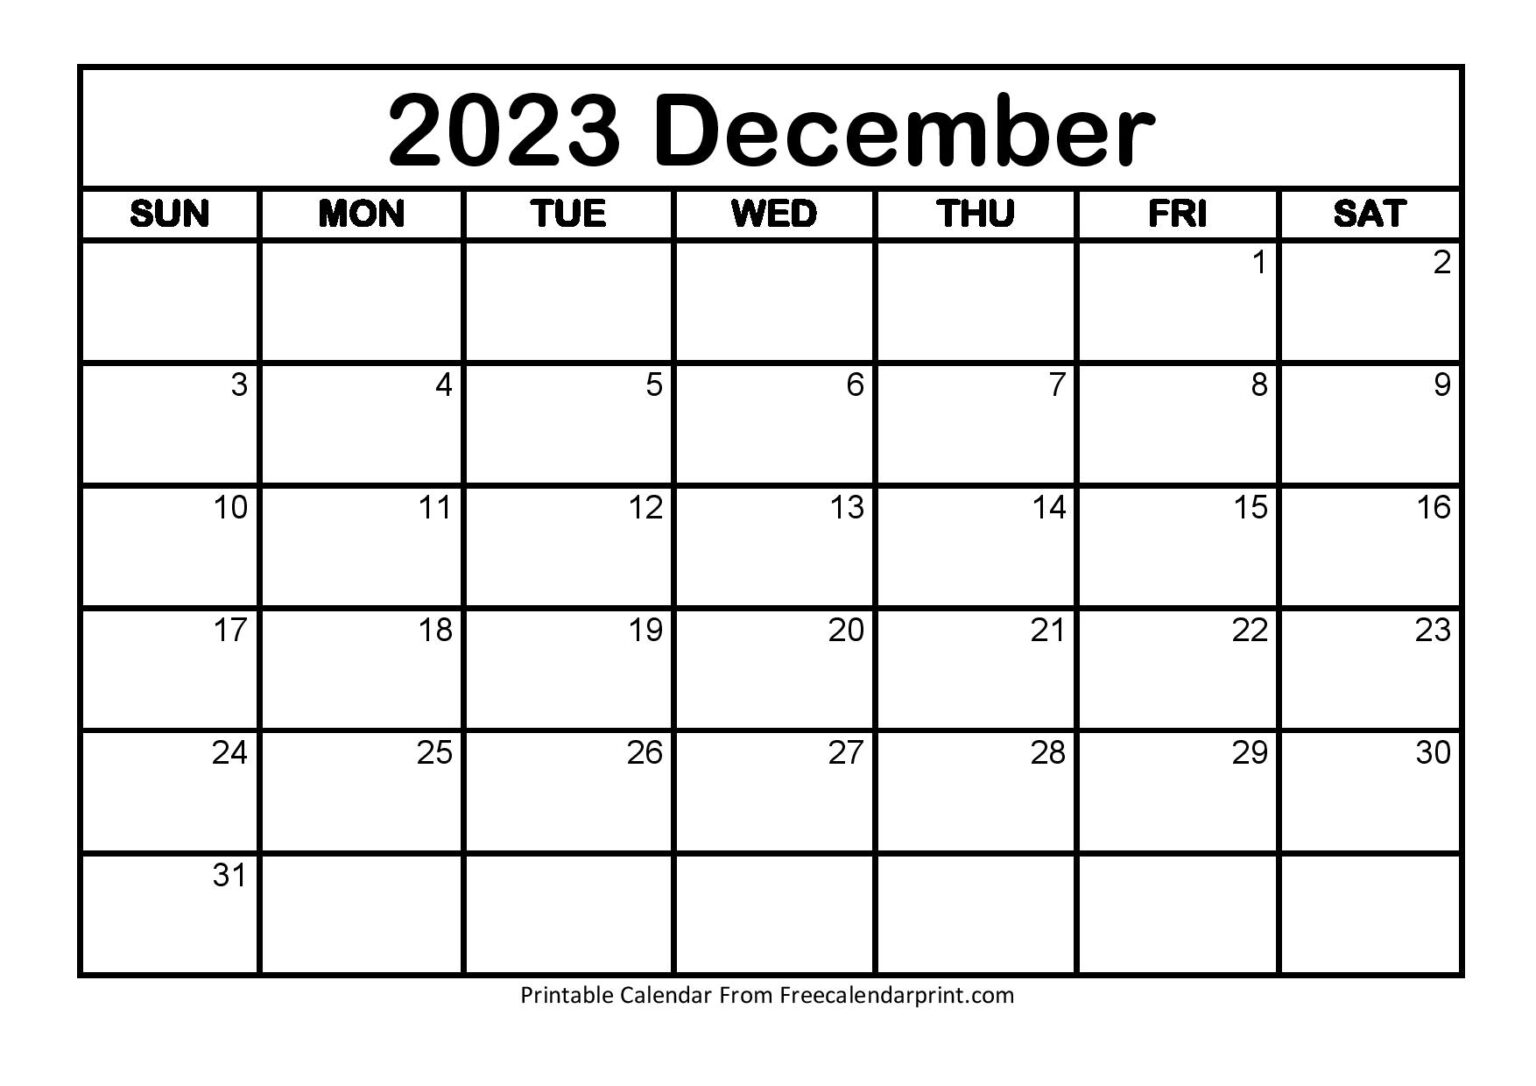 Dec 2023 Calendar